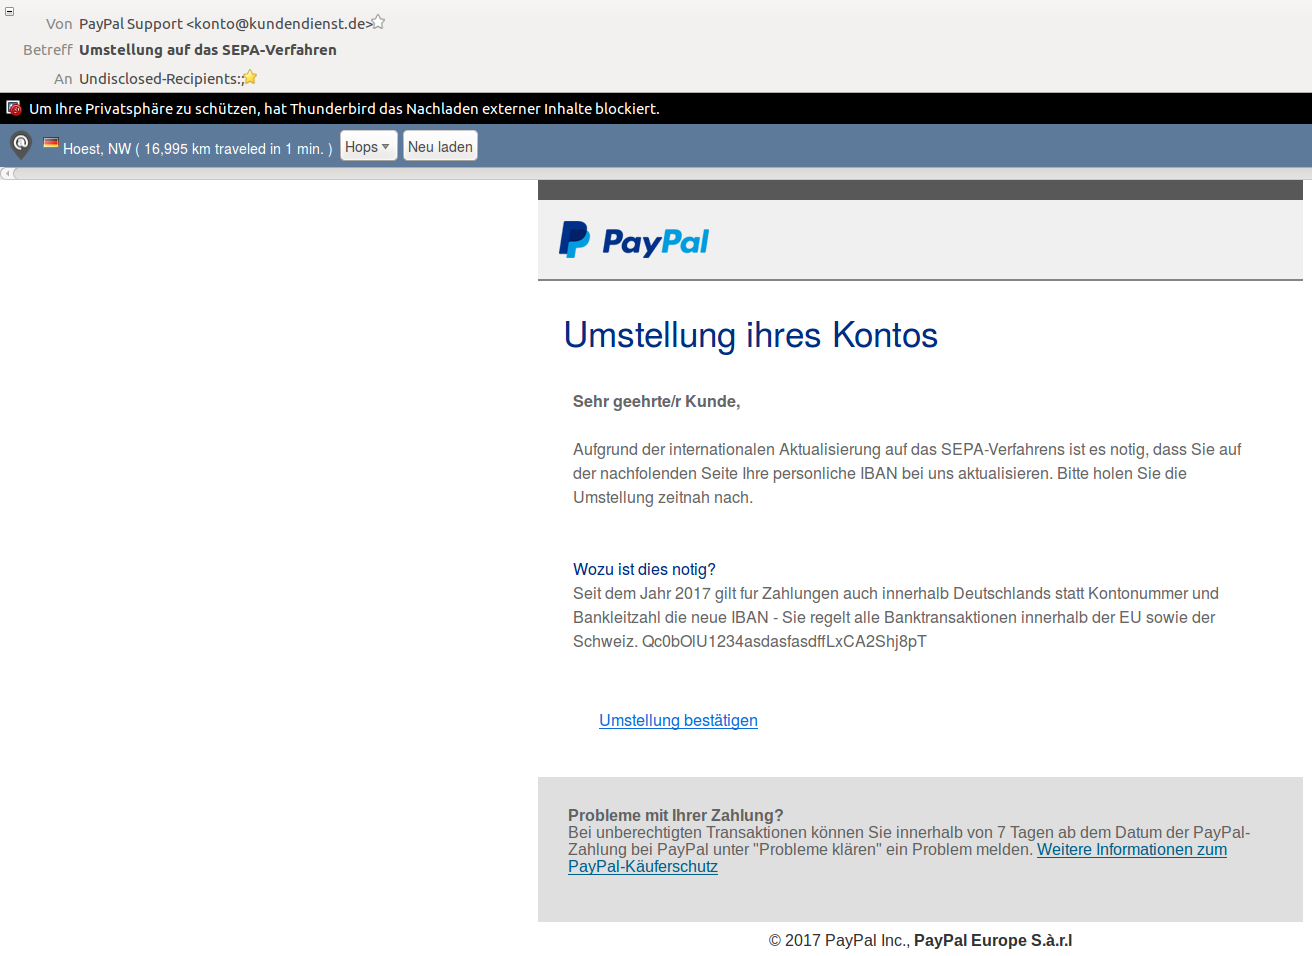 Paypal-Phishing-Mail